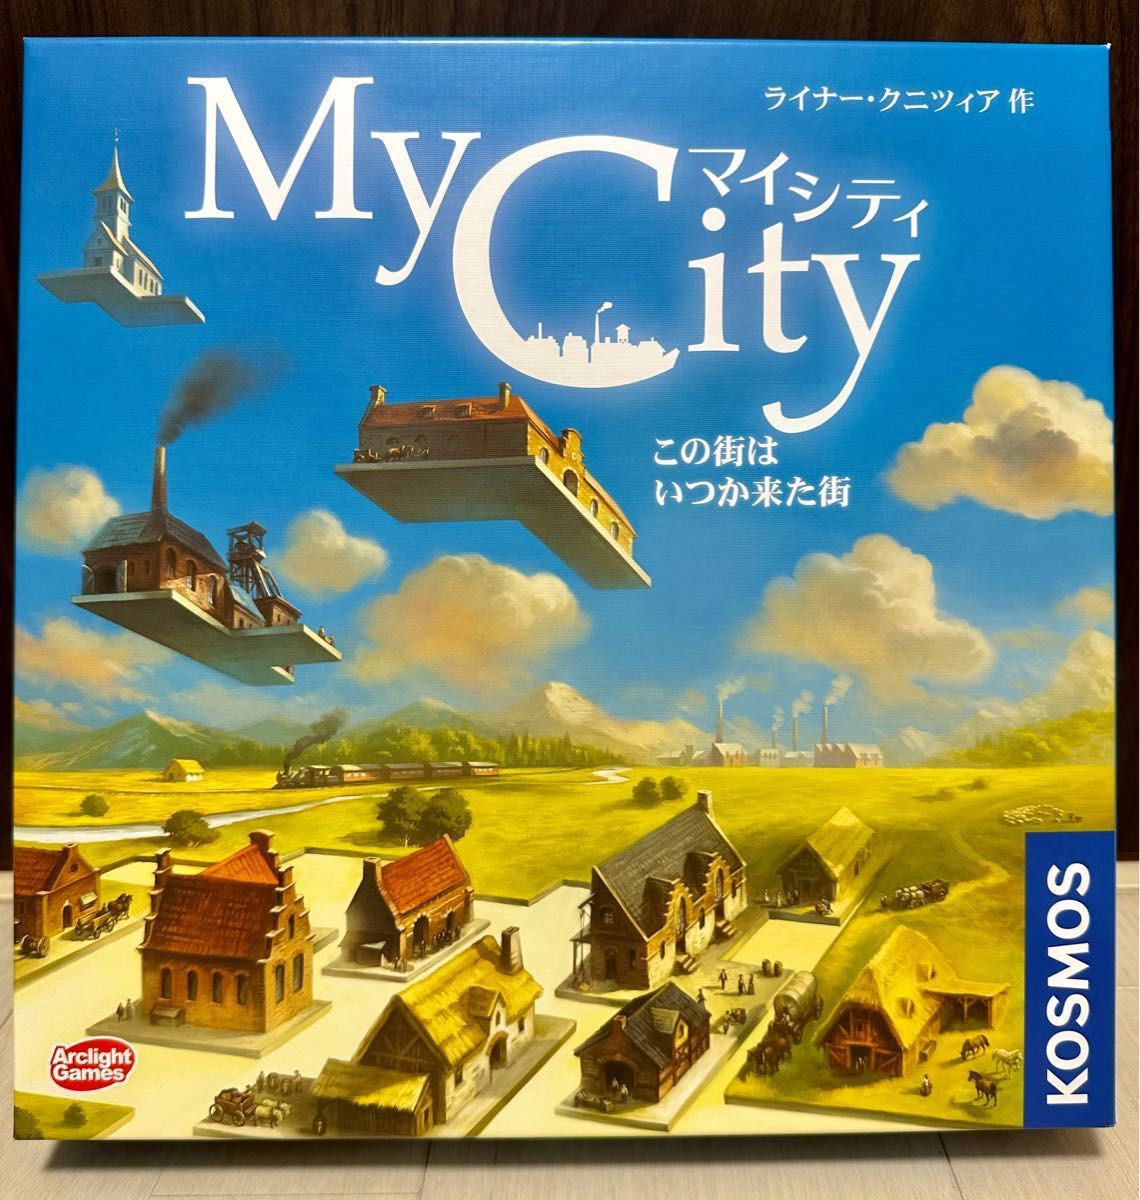 アークライト マイシティ 完全日本語版 2-4人用 30分 10才以上向け ボードゲーム